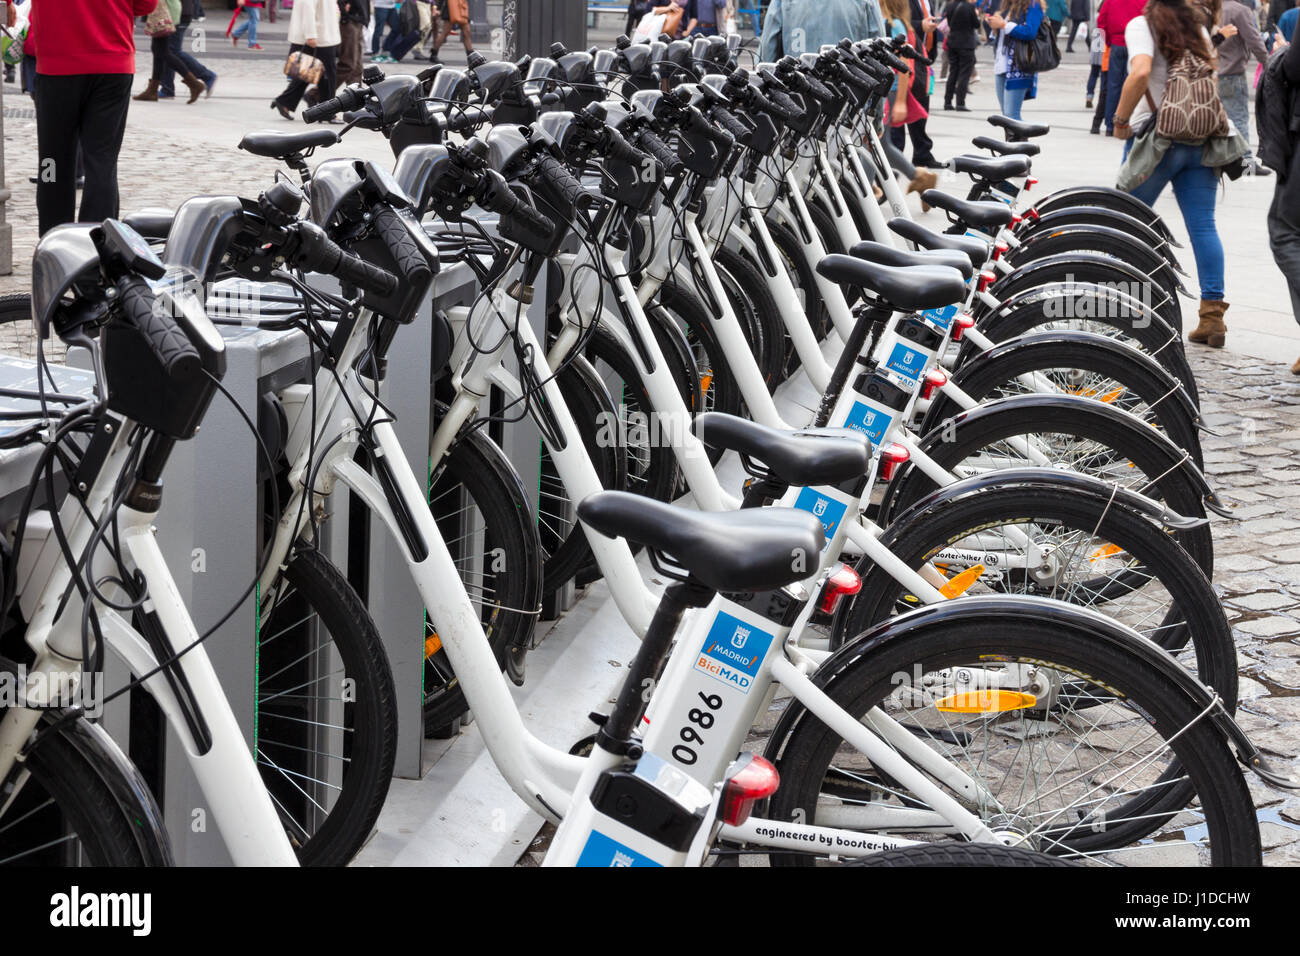 MADRID, Spanien - 10. Oktober 2014: Fahrräder geparkt auf dem Bürgersteig, Zugehörigkeit zu Madrid öffentliche System (BiciMad) in Madrid. Stockfoto